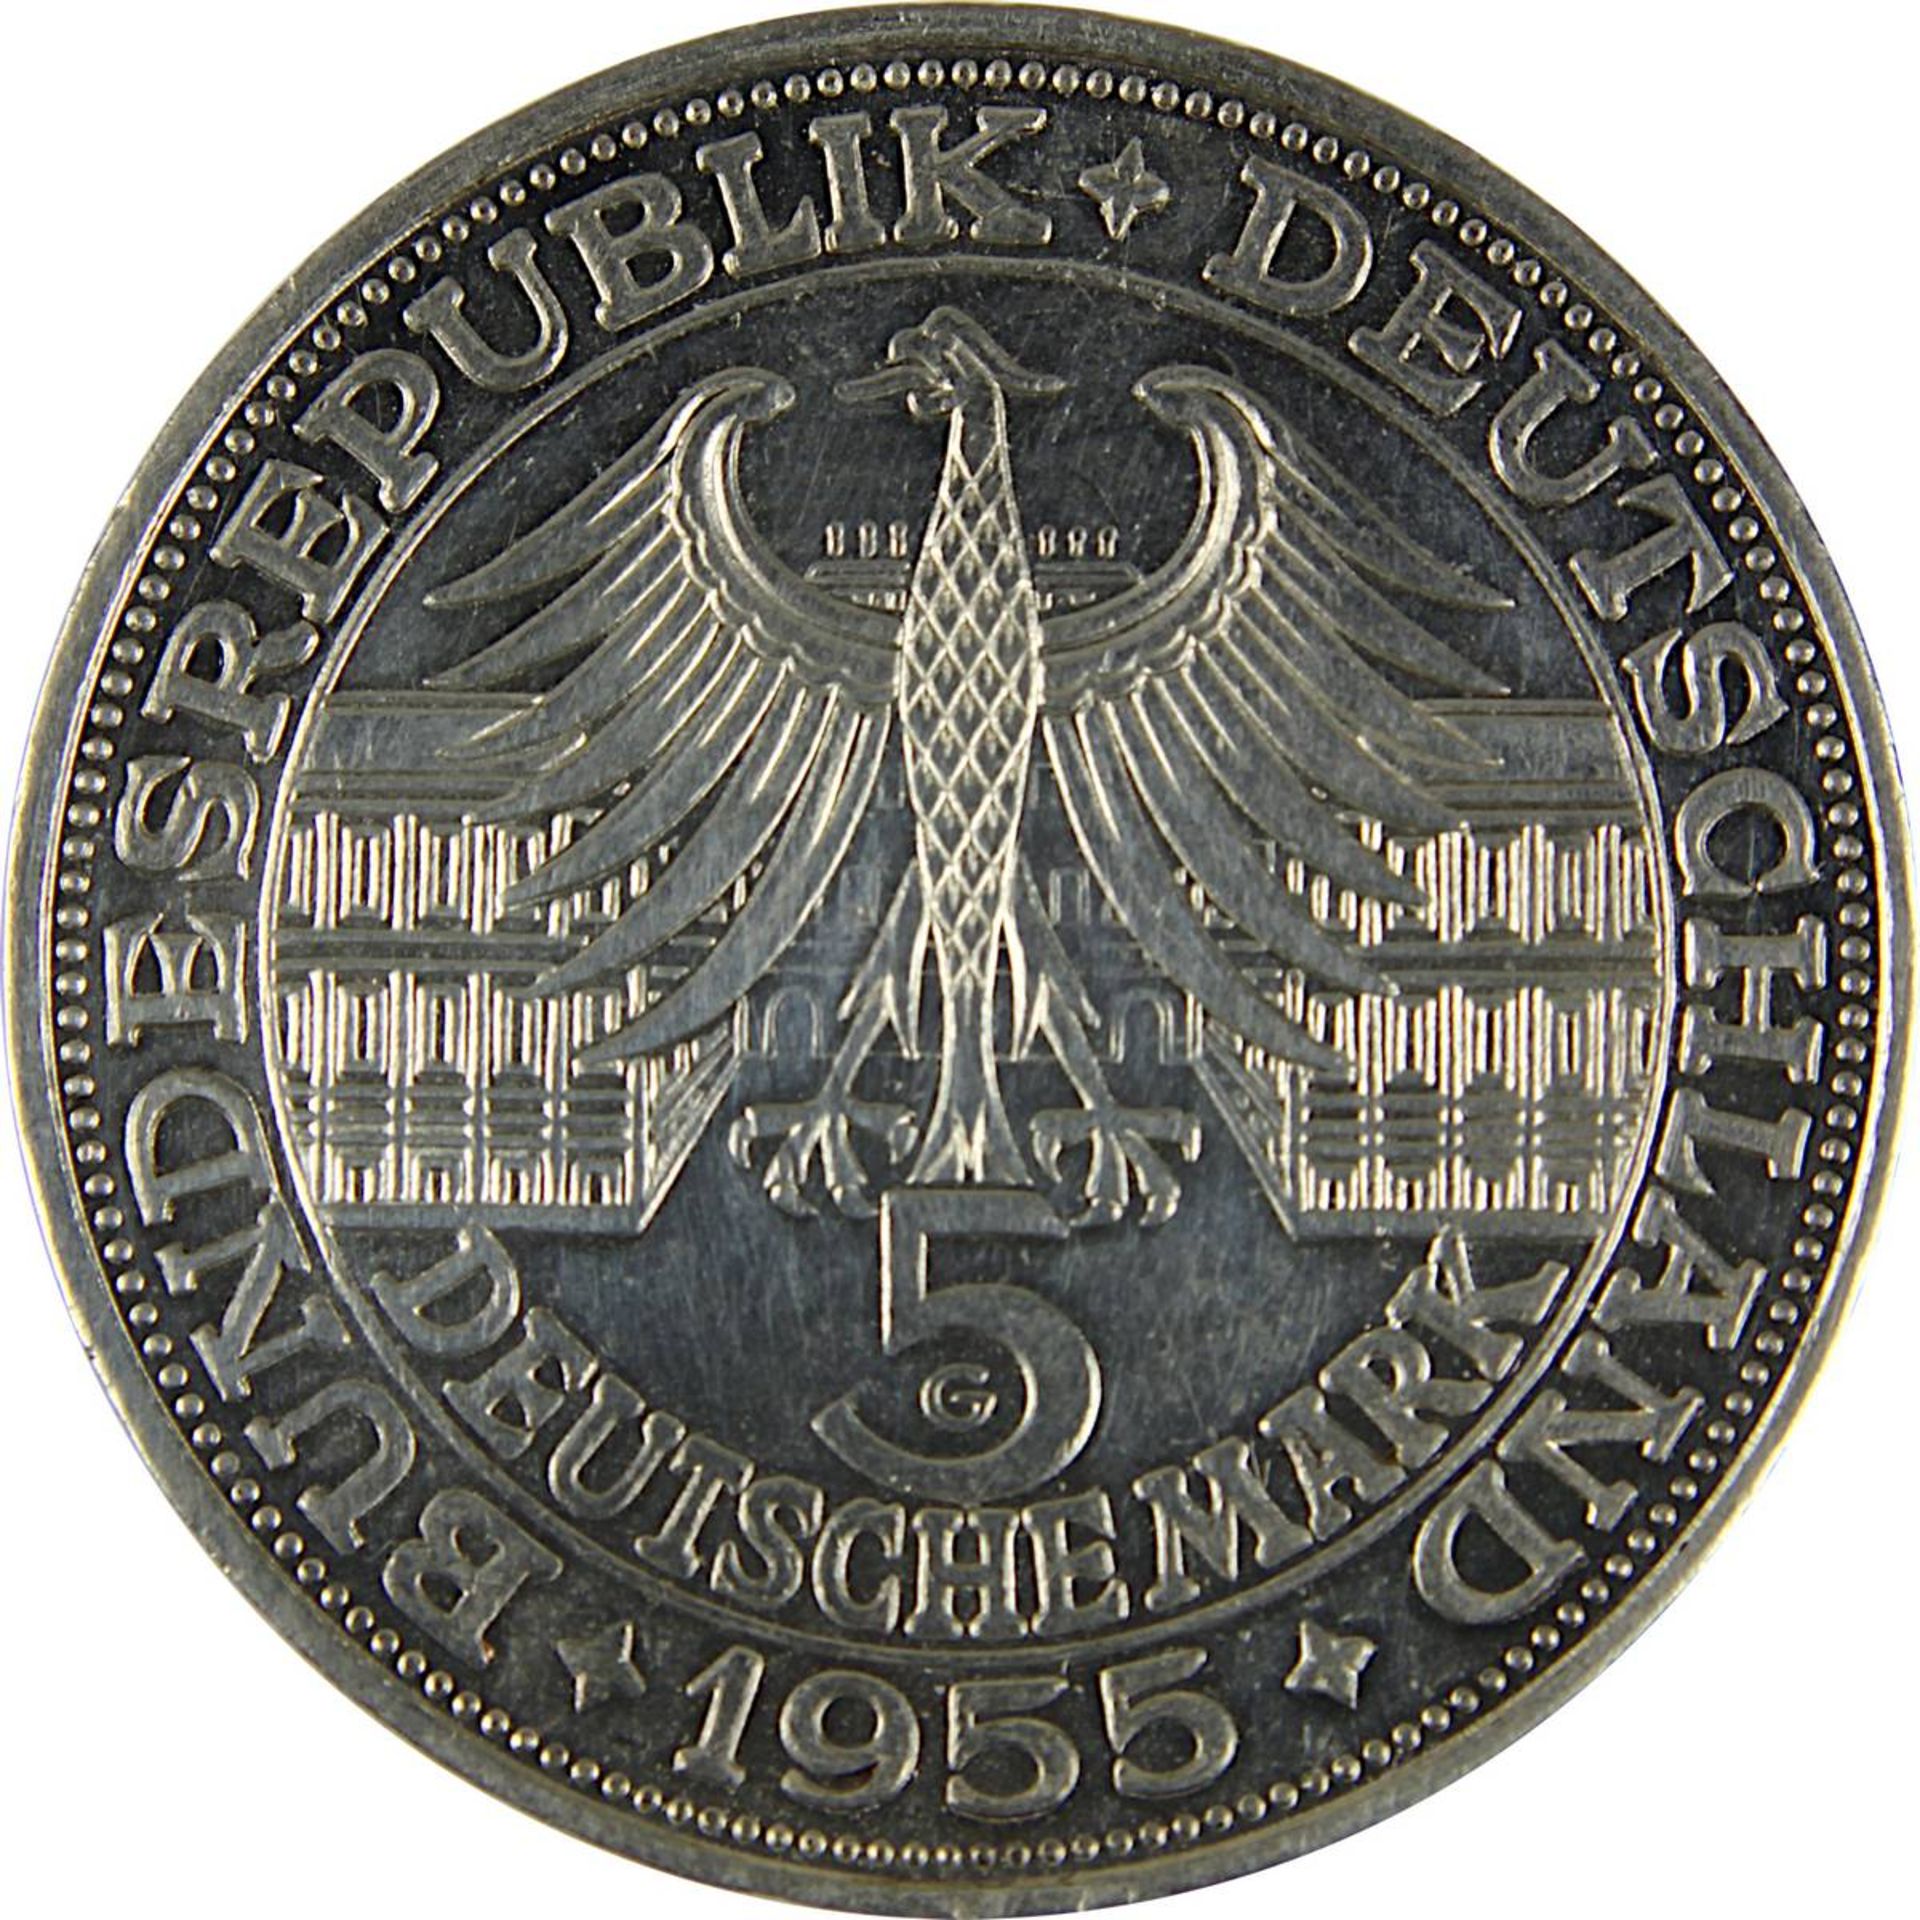 Silbermünze 5 DM, Gedenkmünze Bundesrepublik Deutschland 1955, Av. mit Portrait Ludwig Wilhelm - Image 3 of 3